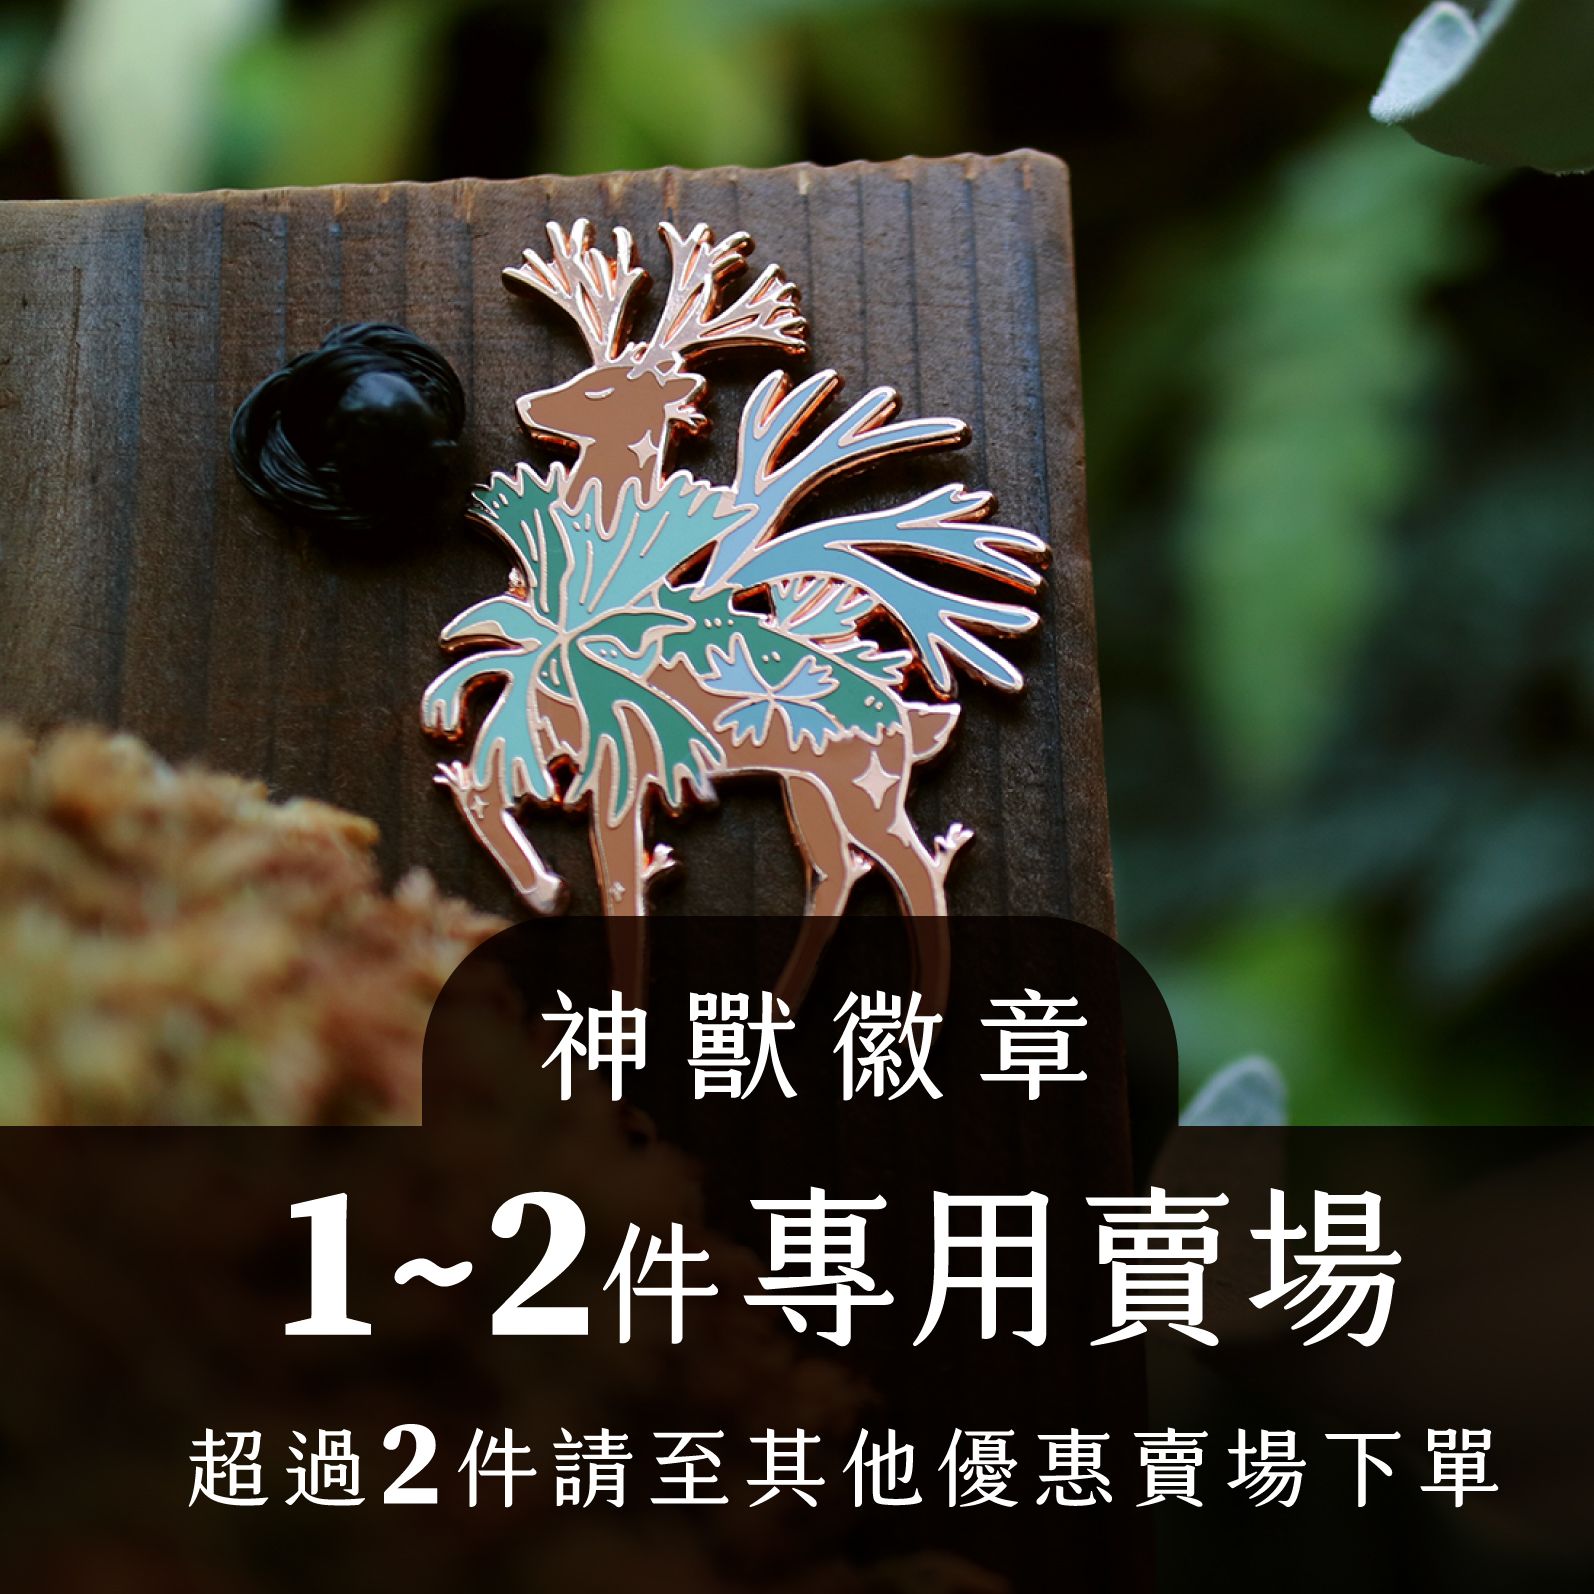 植物神獸徽章-全品相賣場-珍奇植生物-青青小樹設計